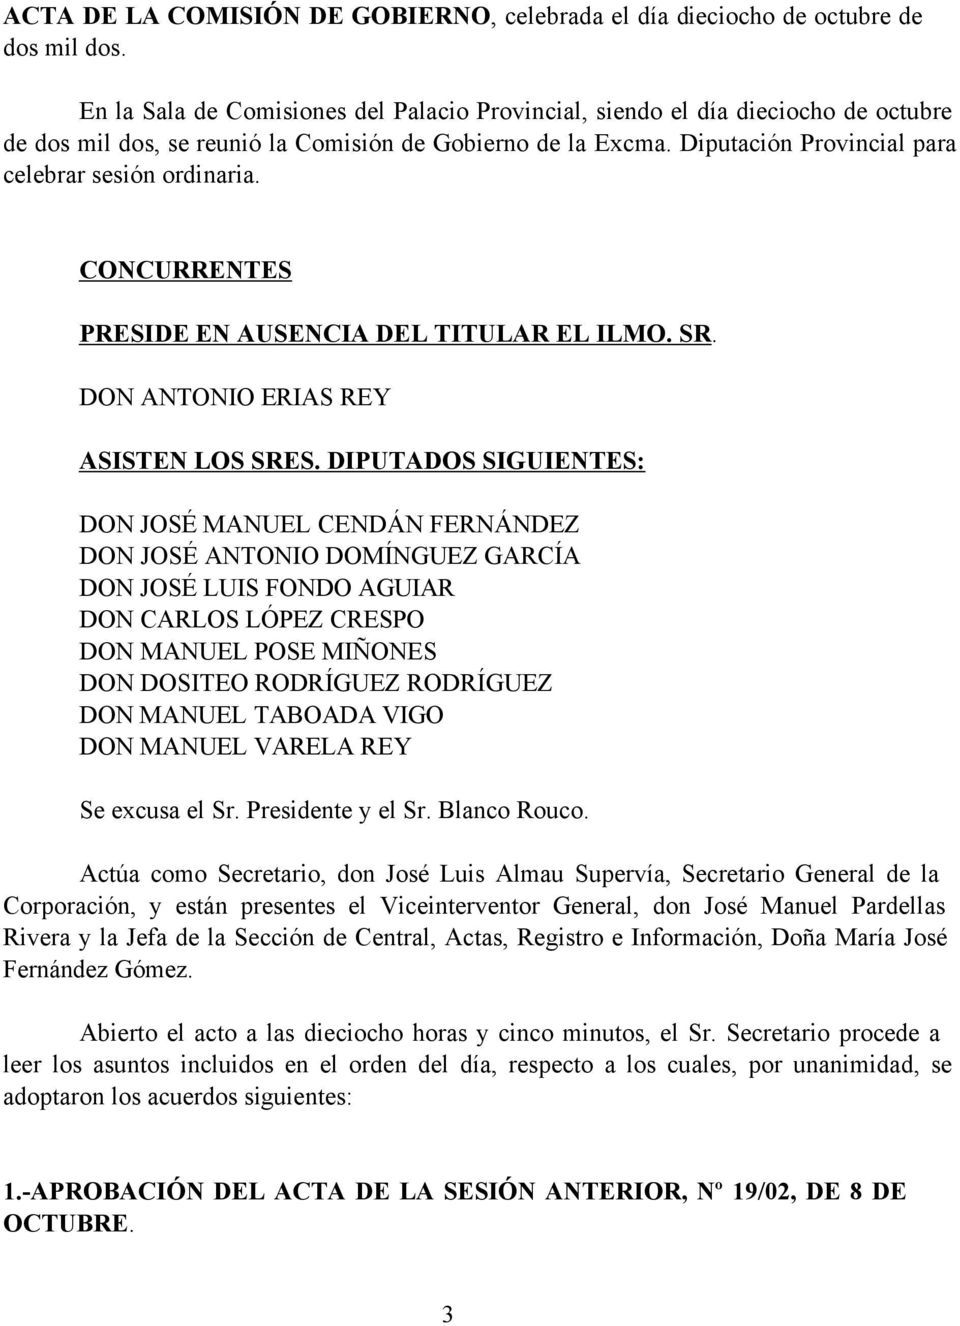 CONCURRENTES PRESIDE EN AUSENCIA DEL TITULAR EL ILMO. SR. DON ANTONIO ERIAS REY ASISTEN LOS SRES.